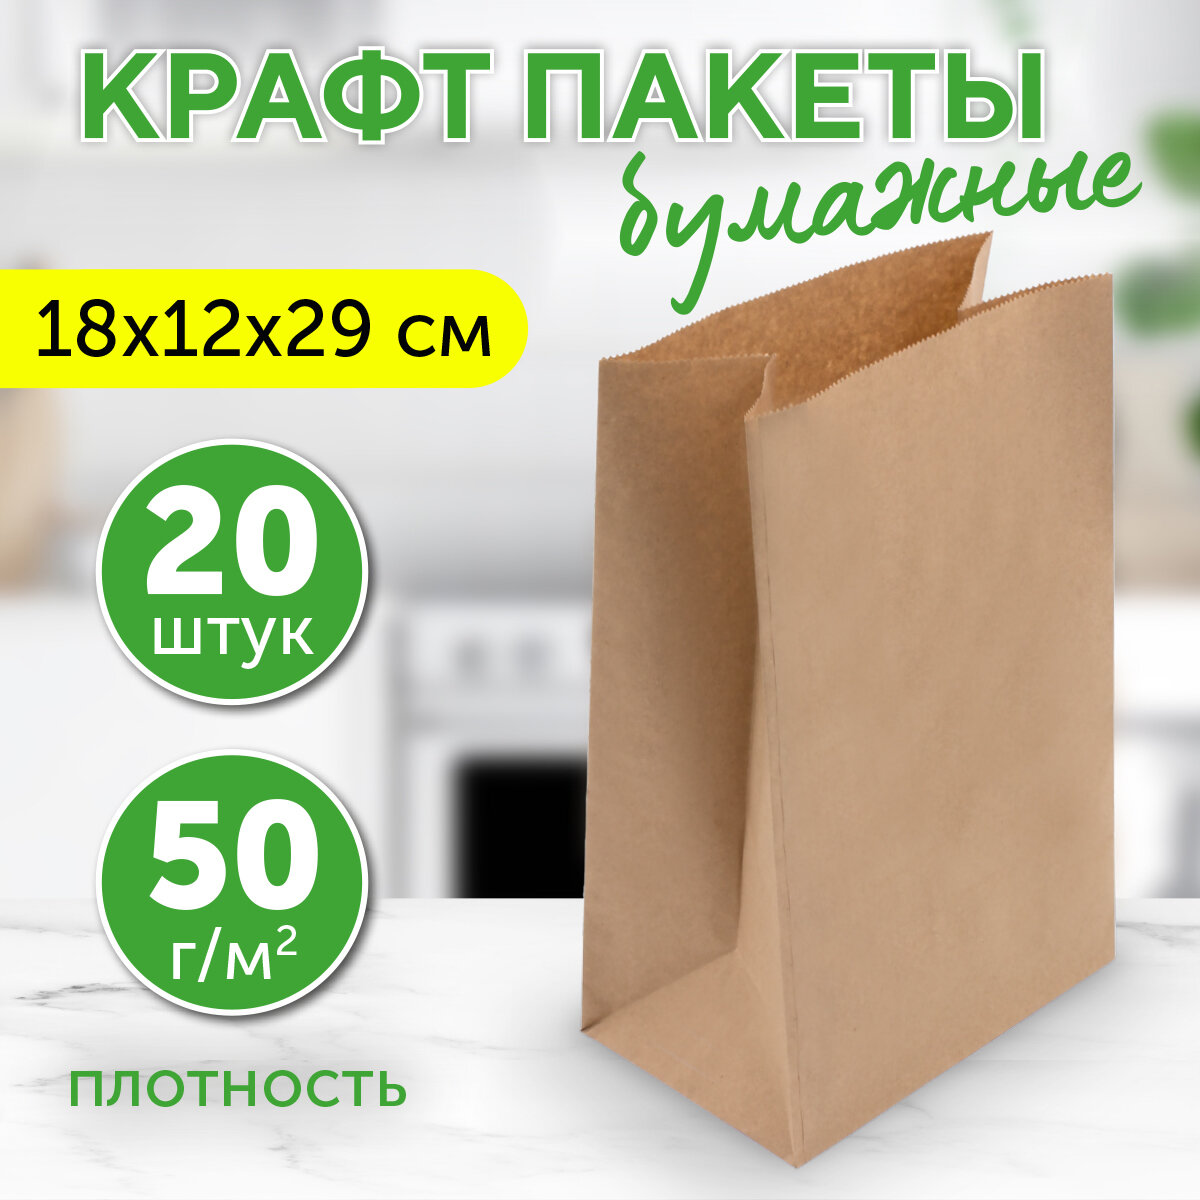 Бумажный крафт пакет фасовочный, 18х12х29 см, 20 шт